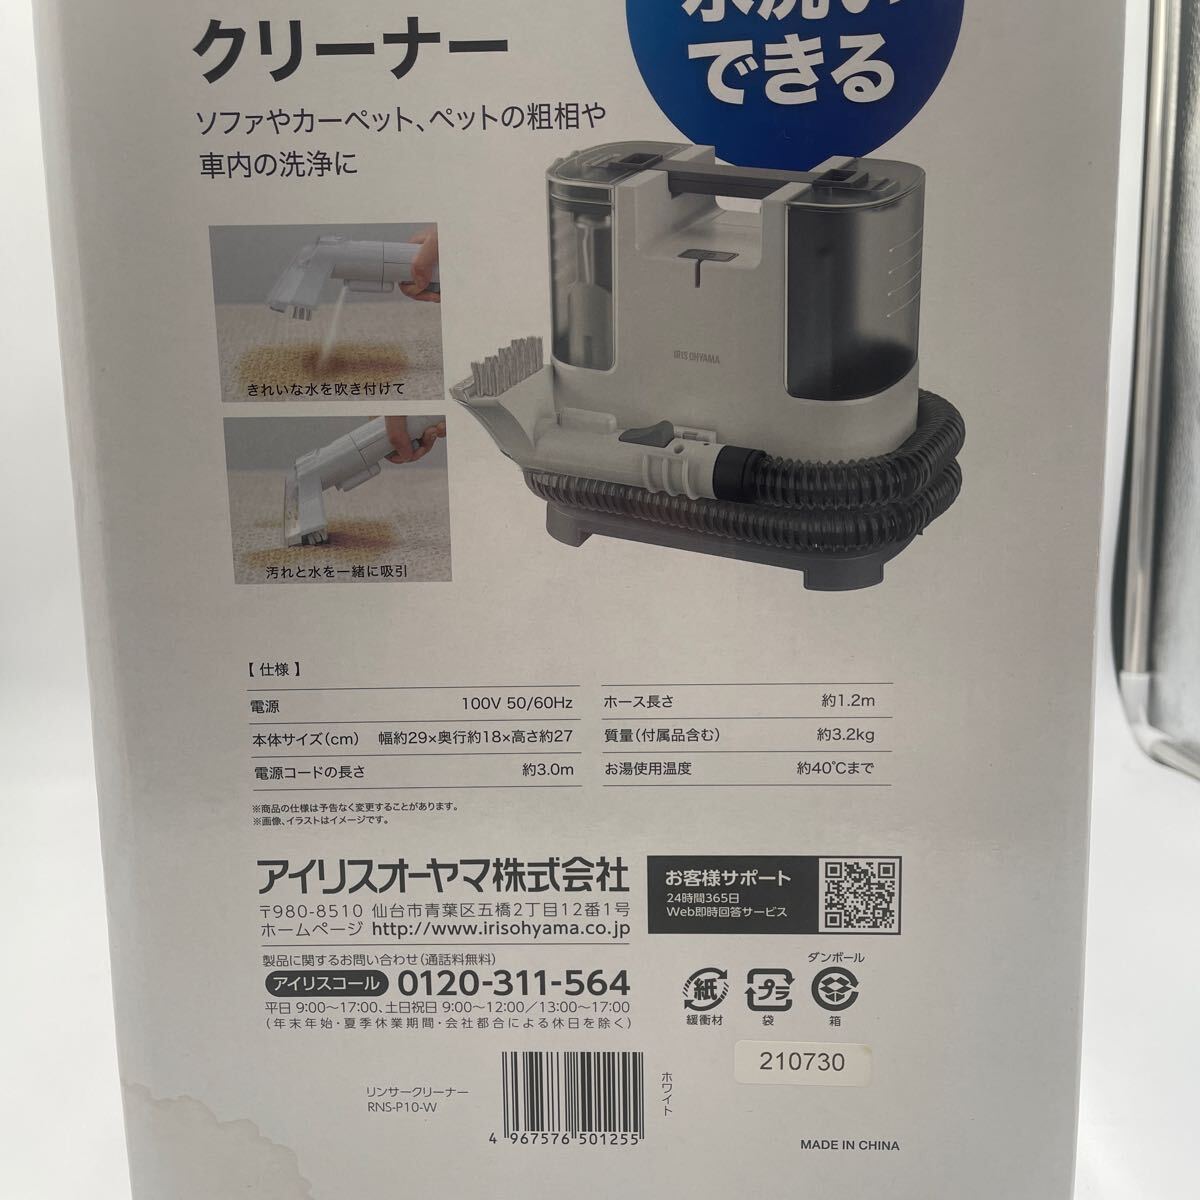 【未使用品】アイリスオーヤマ RNS-P10-W IRIS OHYAMA 布製品クリーナー 掃除機 自動ポンプ式 リンサークリーナー _画像3